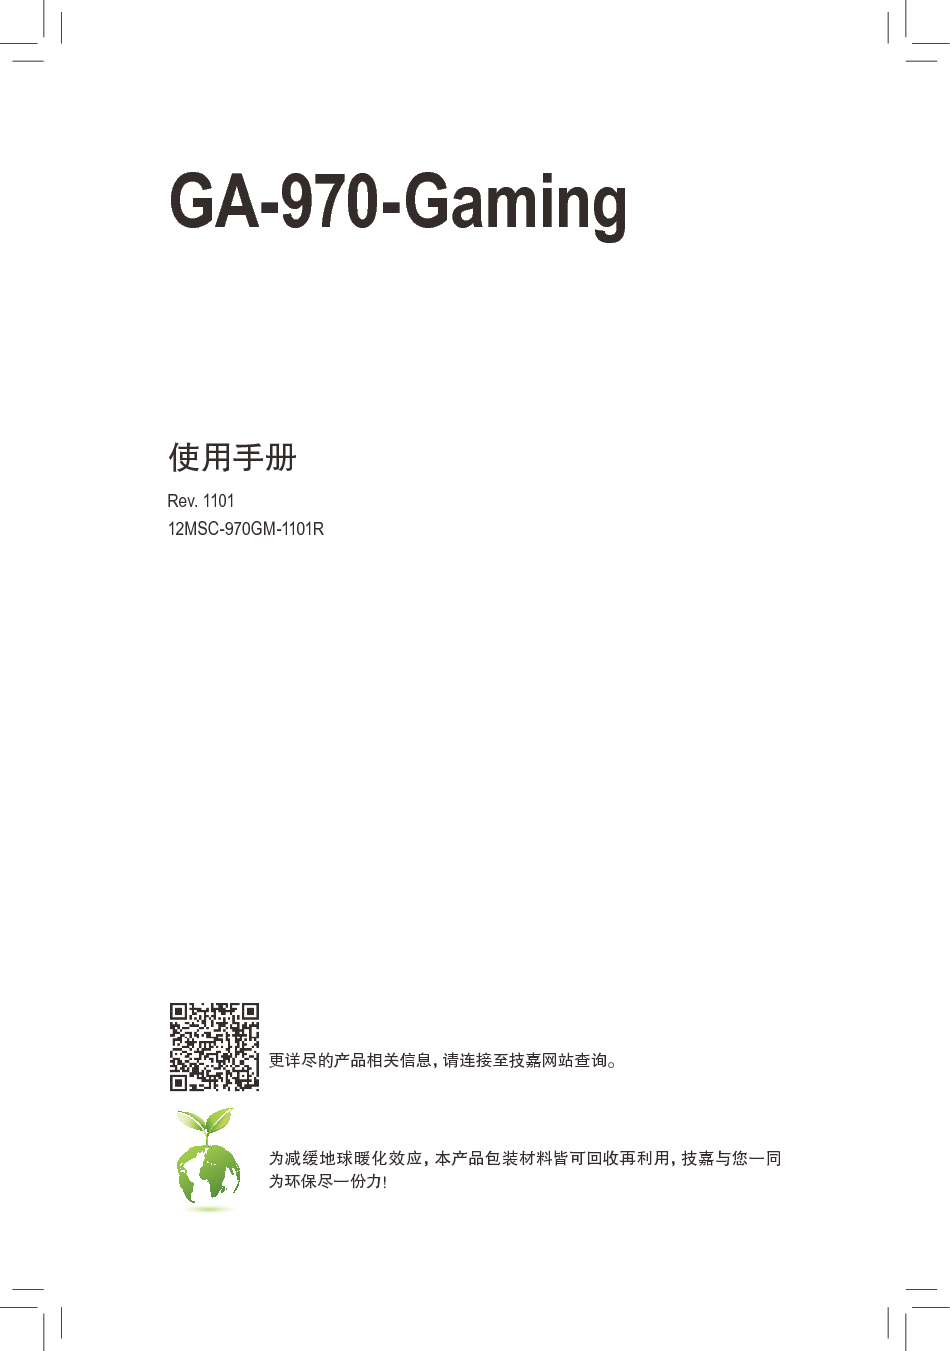 技嘉 Gigabyte GA-970-GAMING 1101版 使用手册 封面